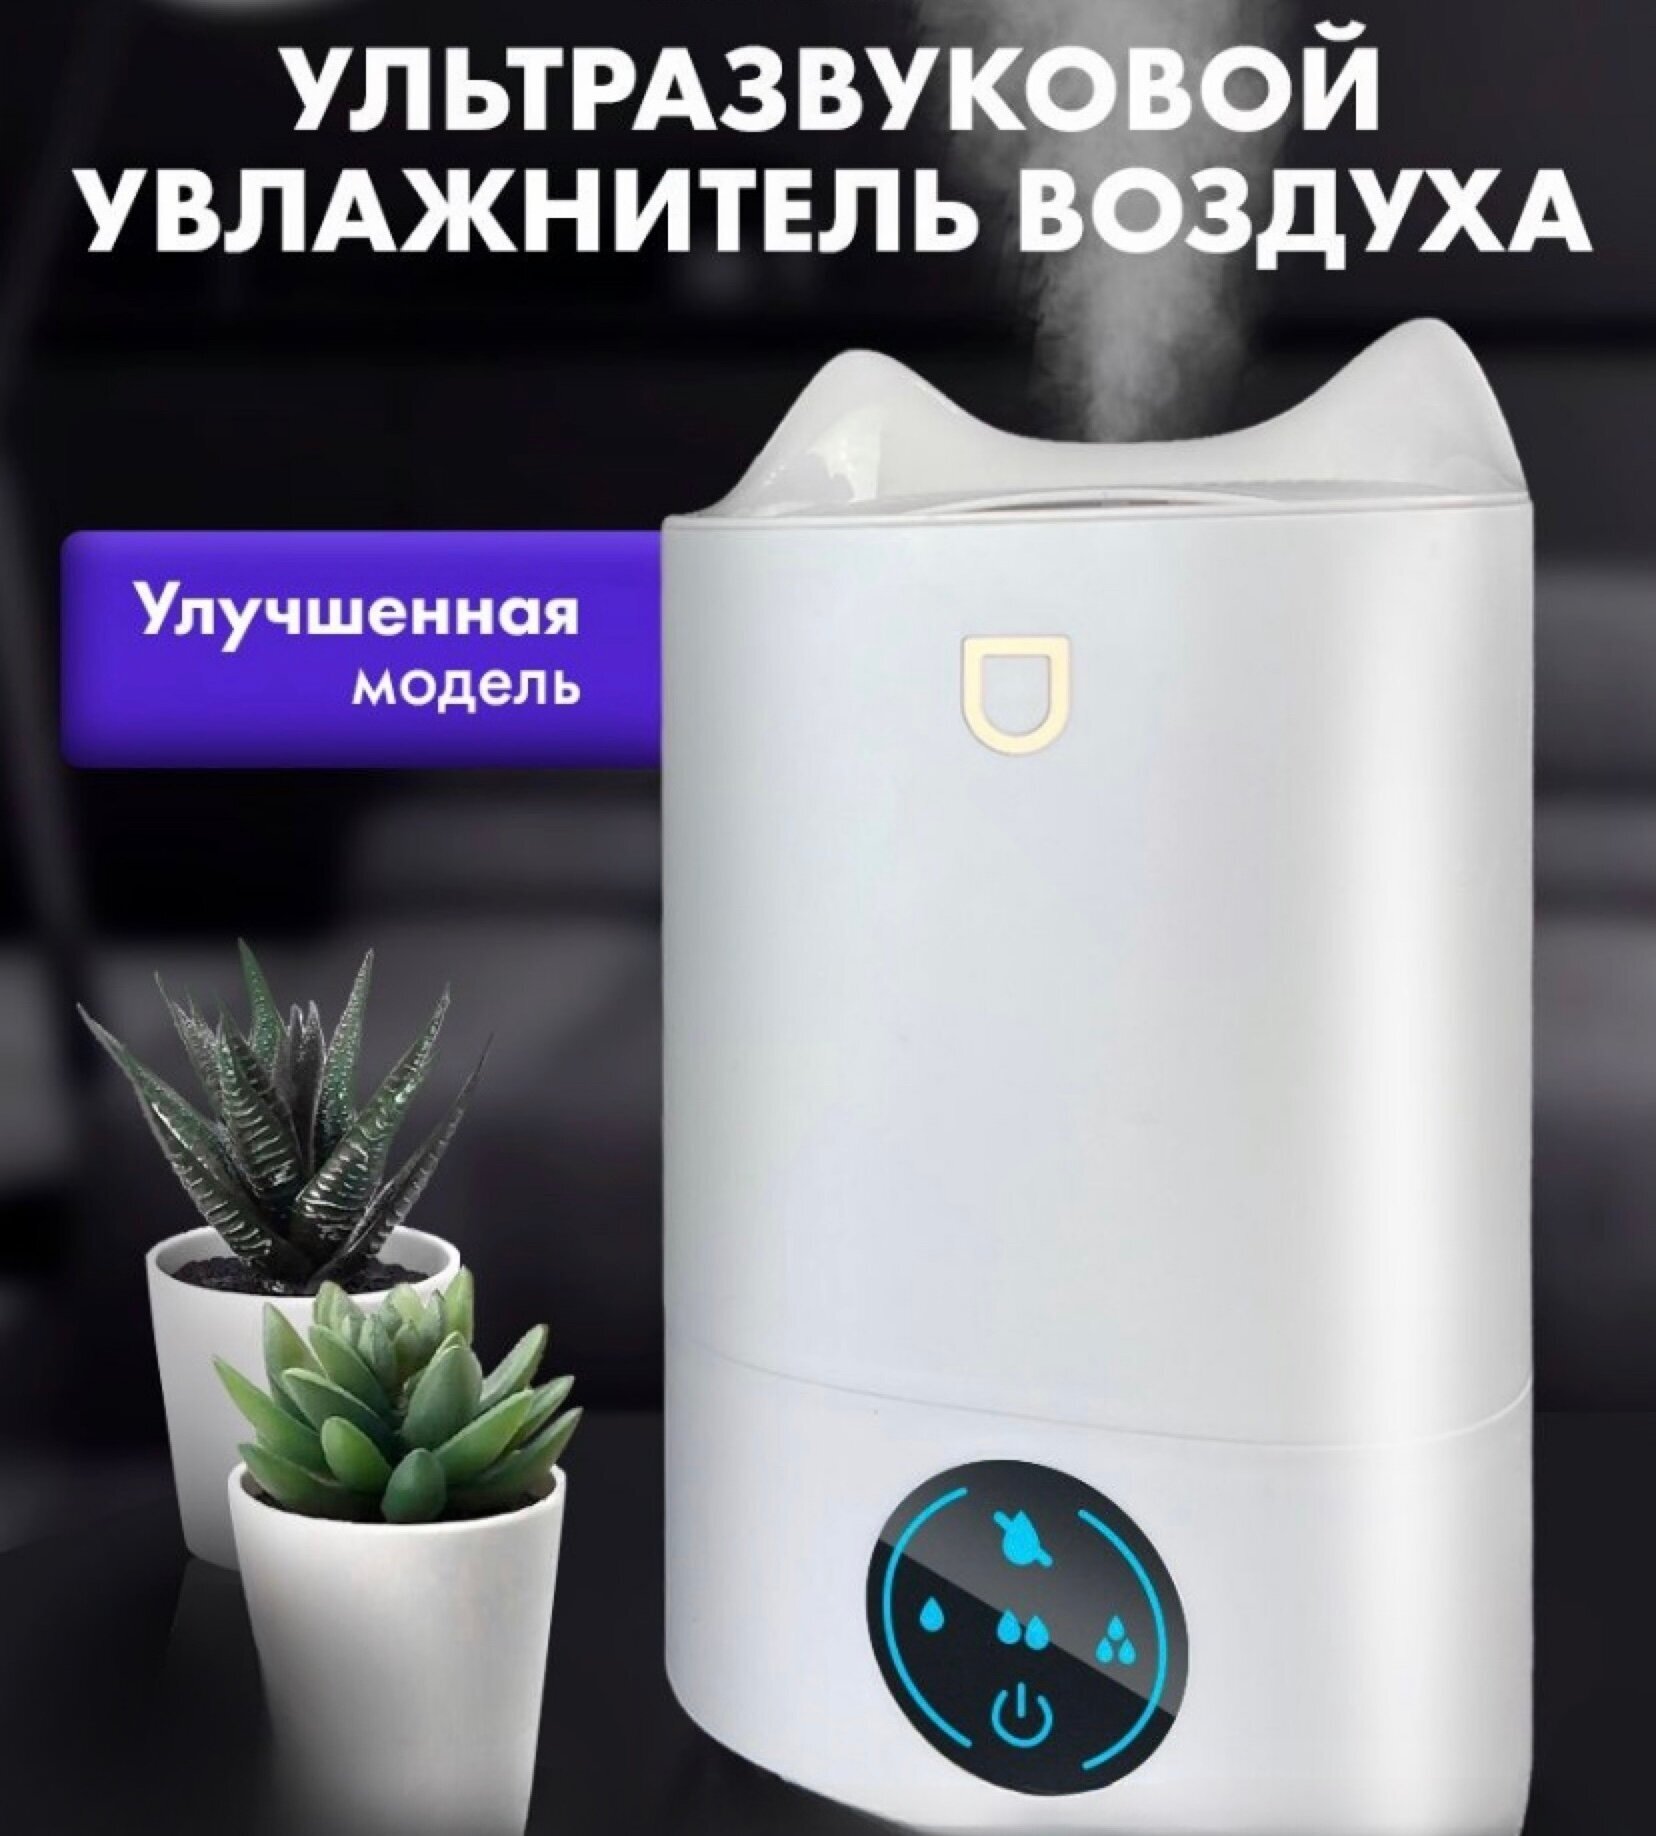 Увлажнитель-ароматизатор воздуха от GadFamily — купить в интернет-магазине по низкой цене на Яндекс Маркете